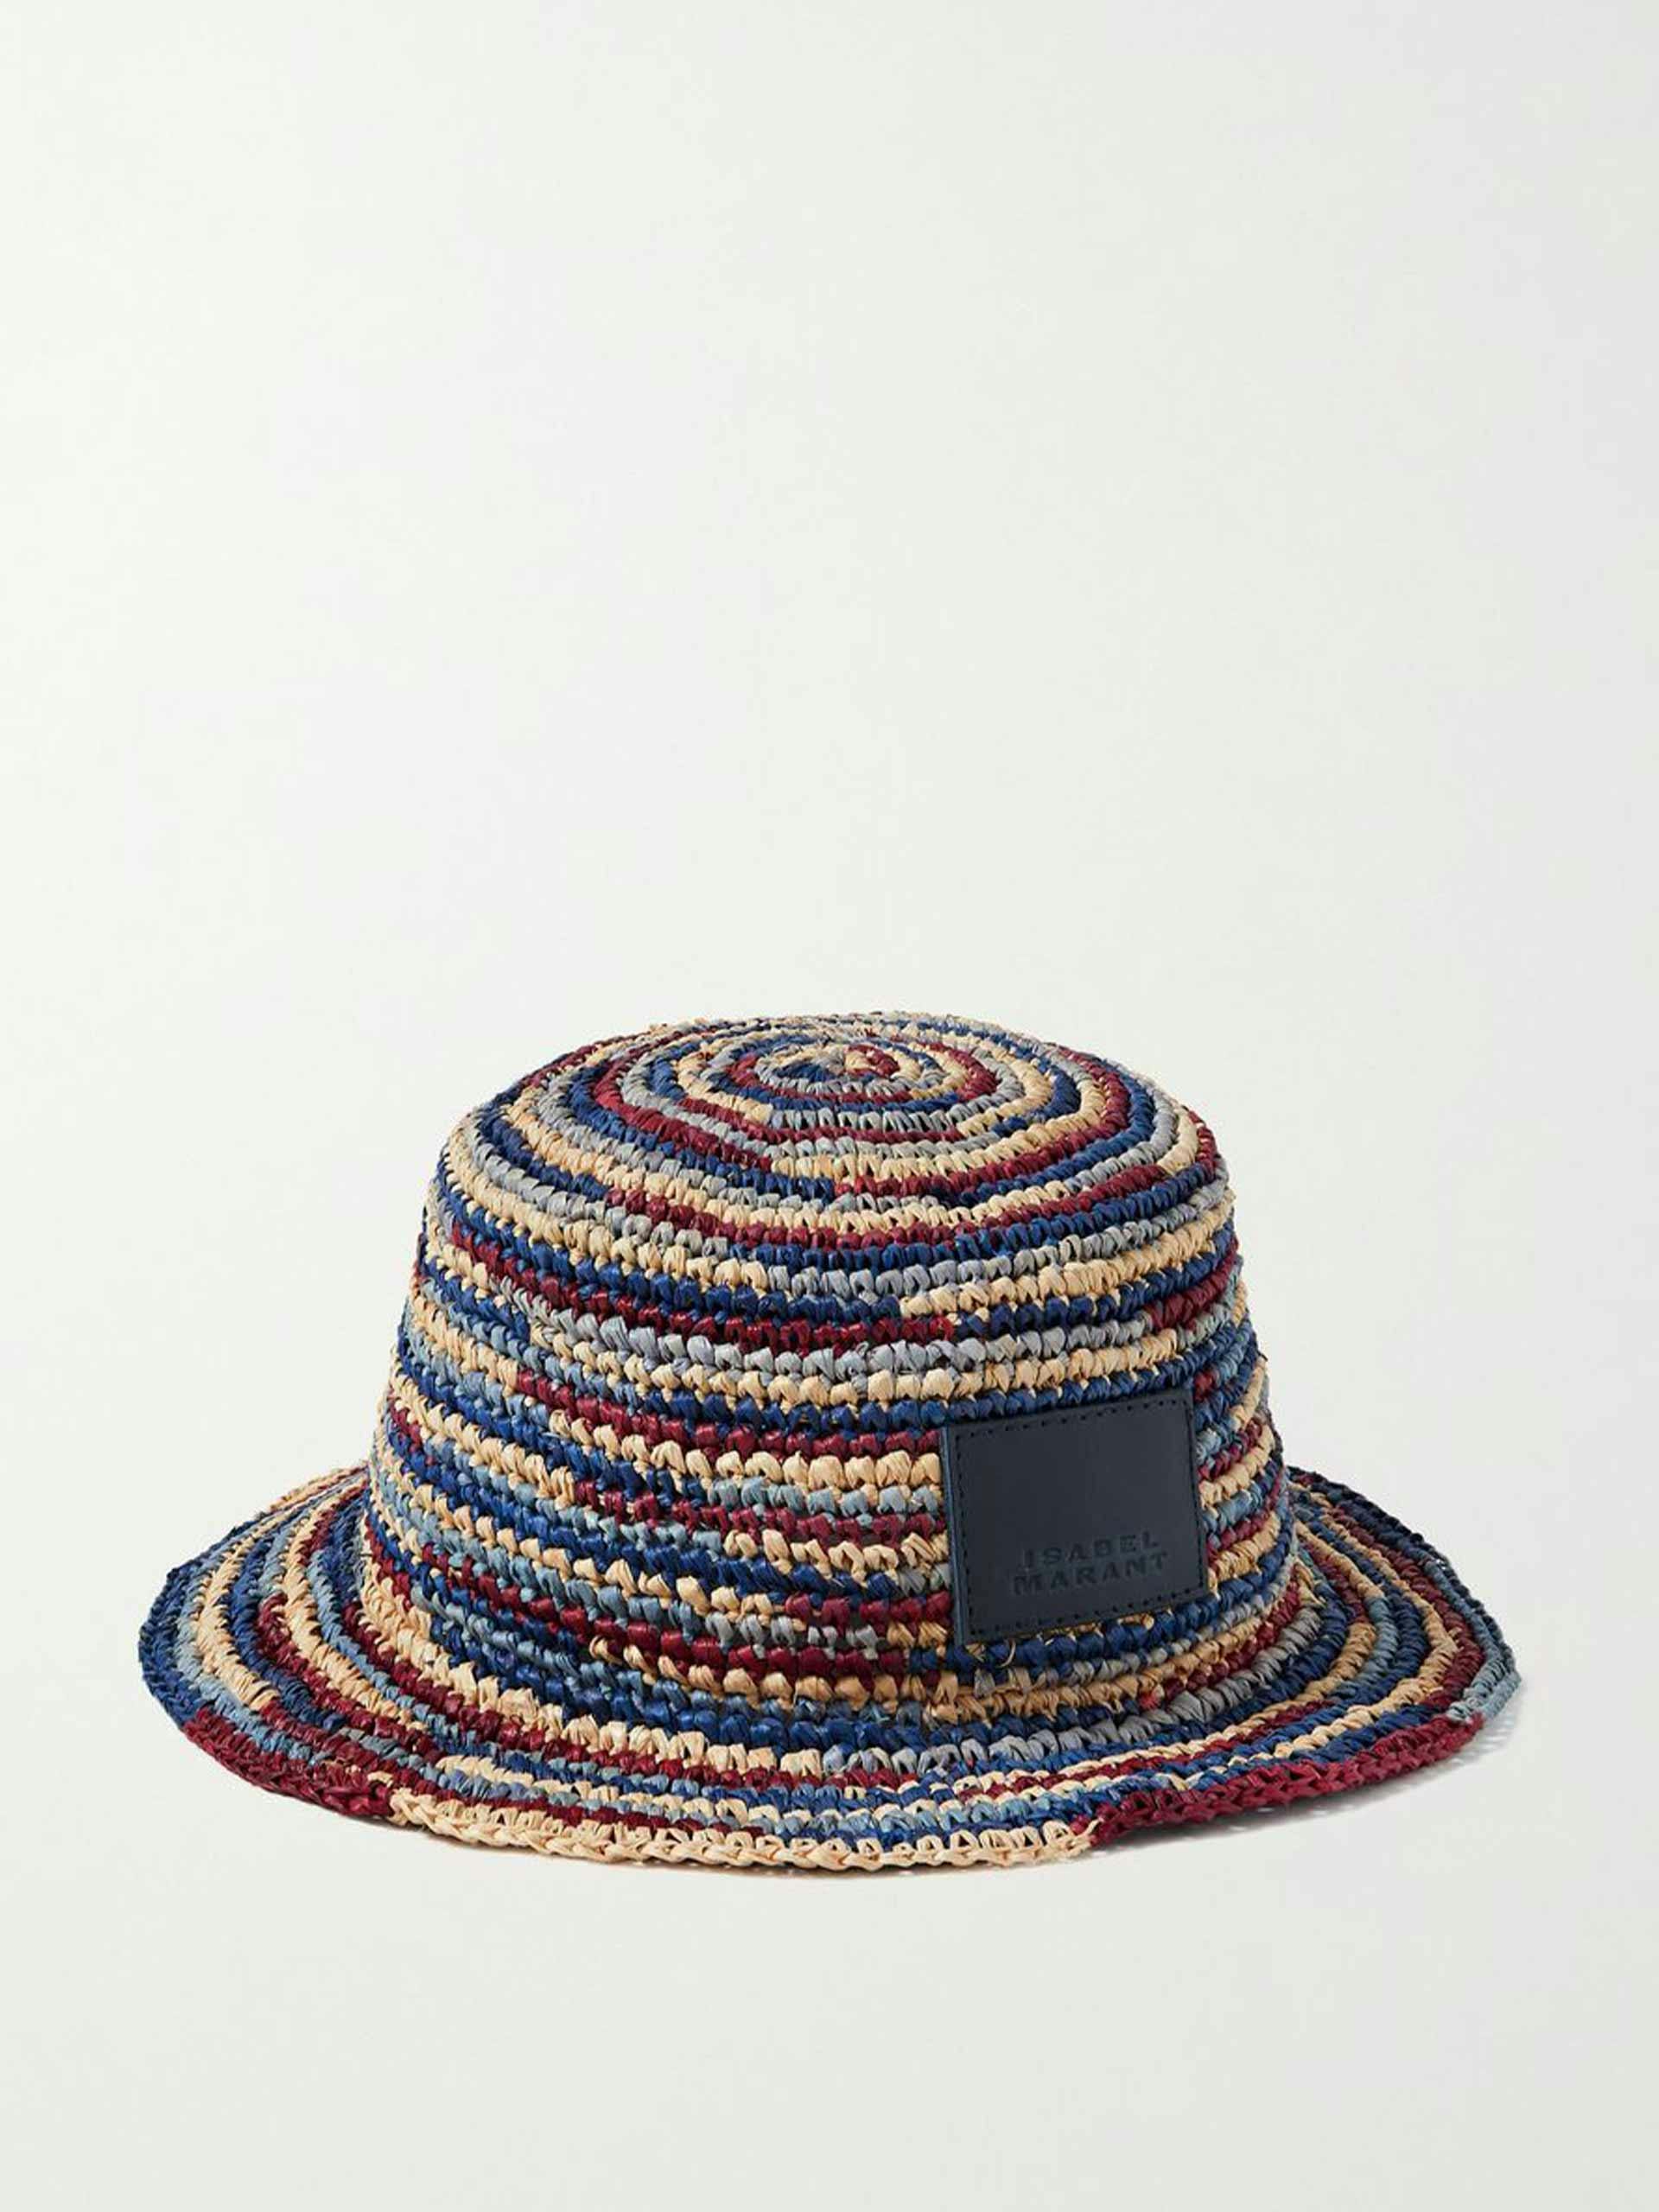 Striped raffia hat